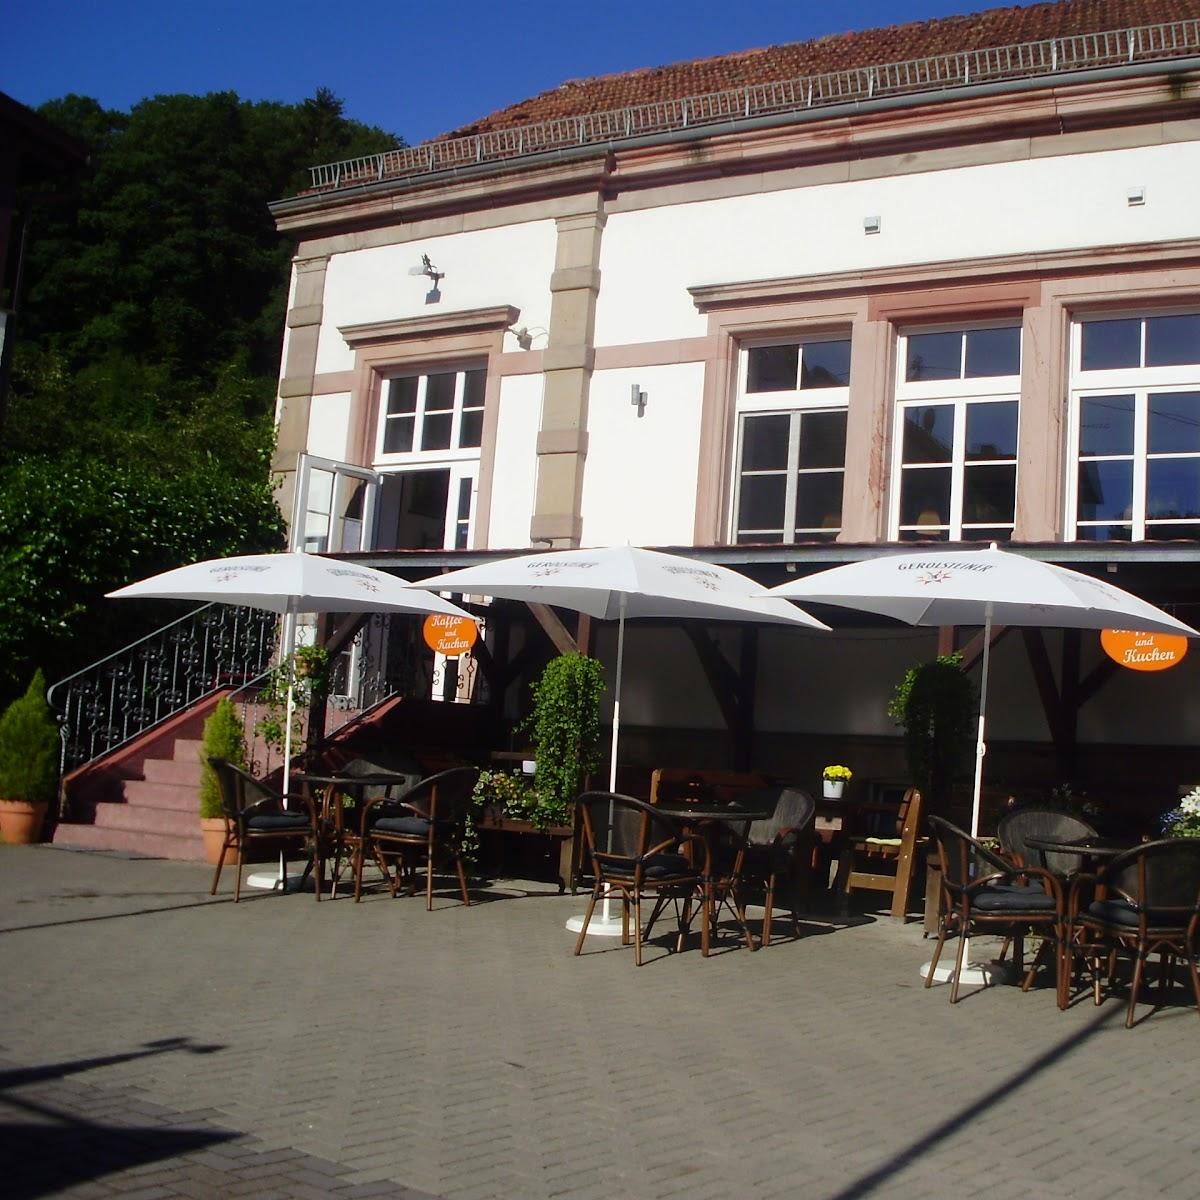 Restaurant "Cafe Veldenzer Mühle" in Erdesbach